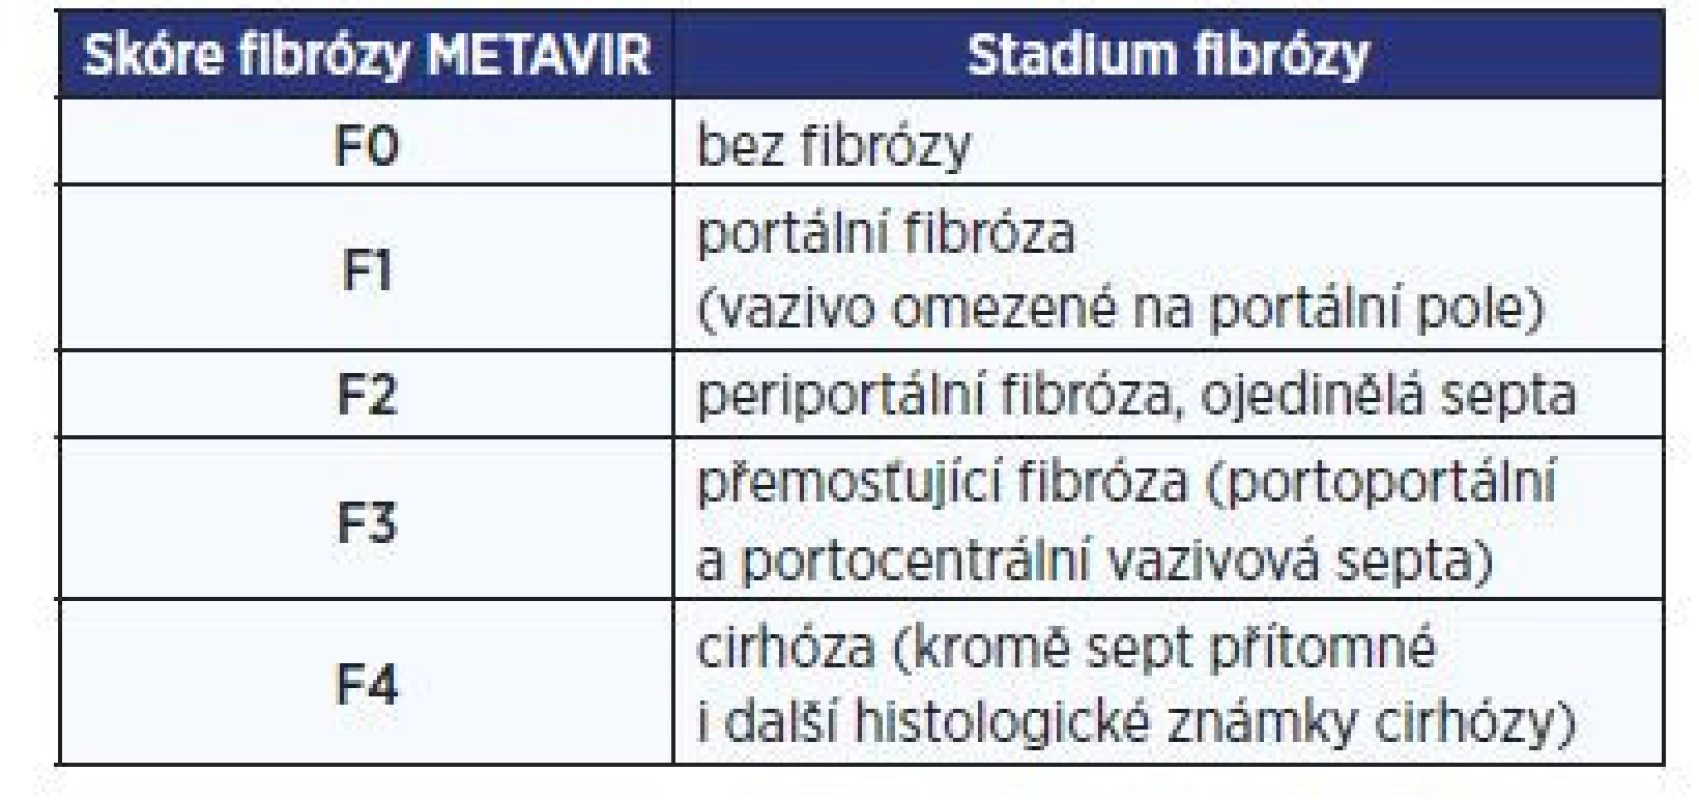 Histologický systém METAVIR klasifikující stupně fibrózy
podle morfologických kritérií (2)